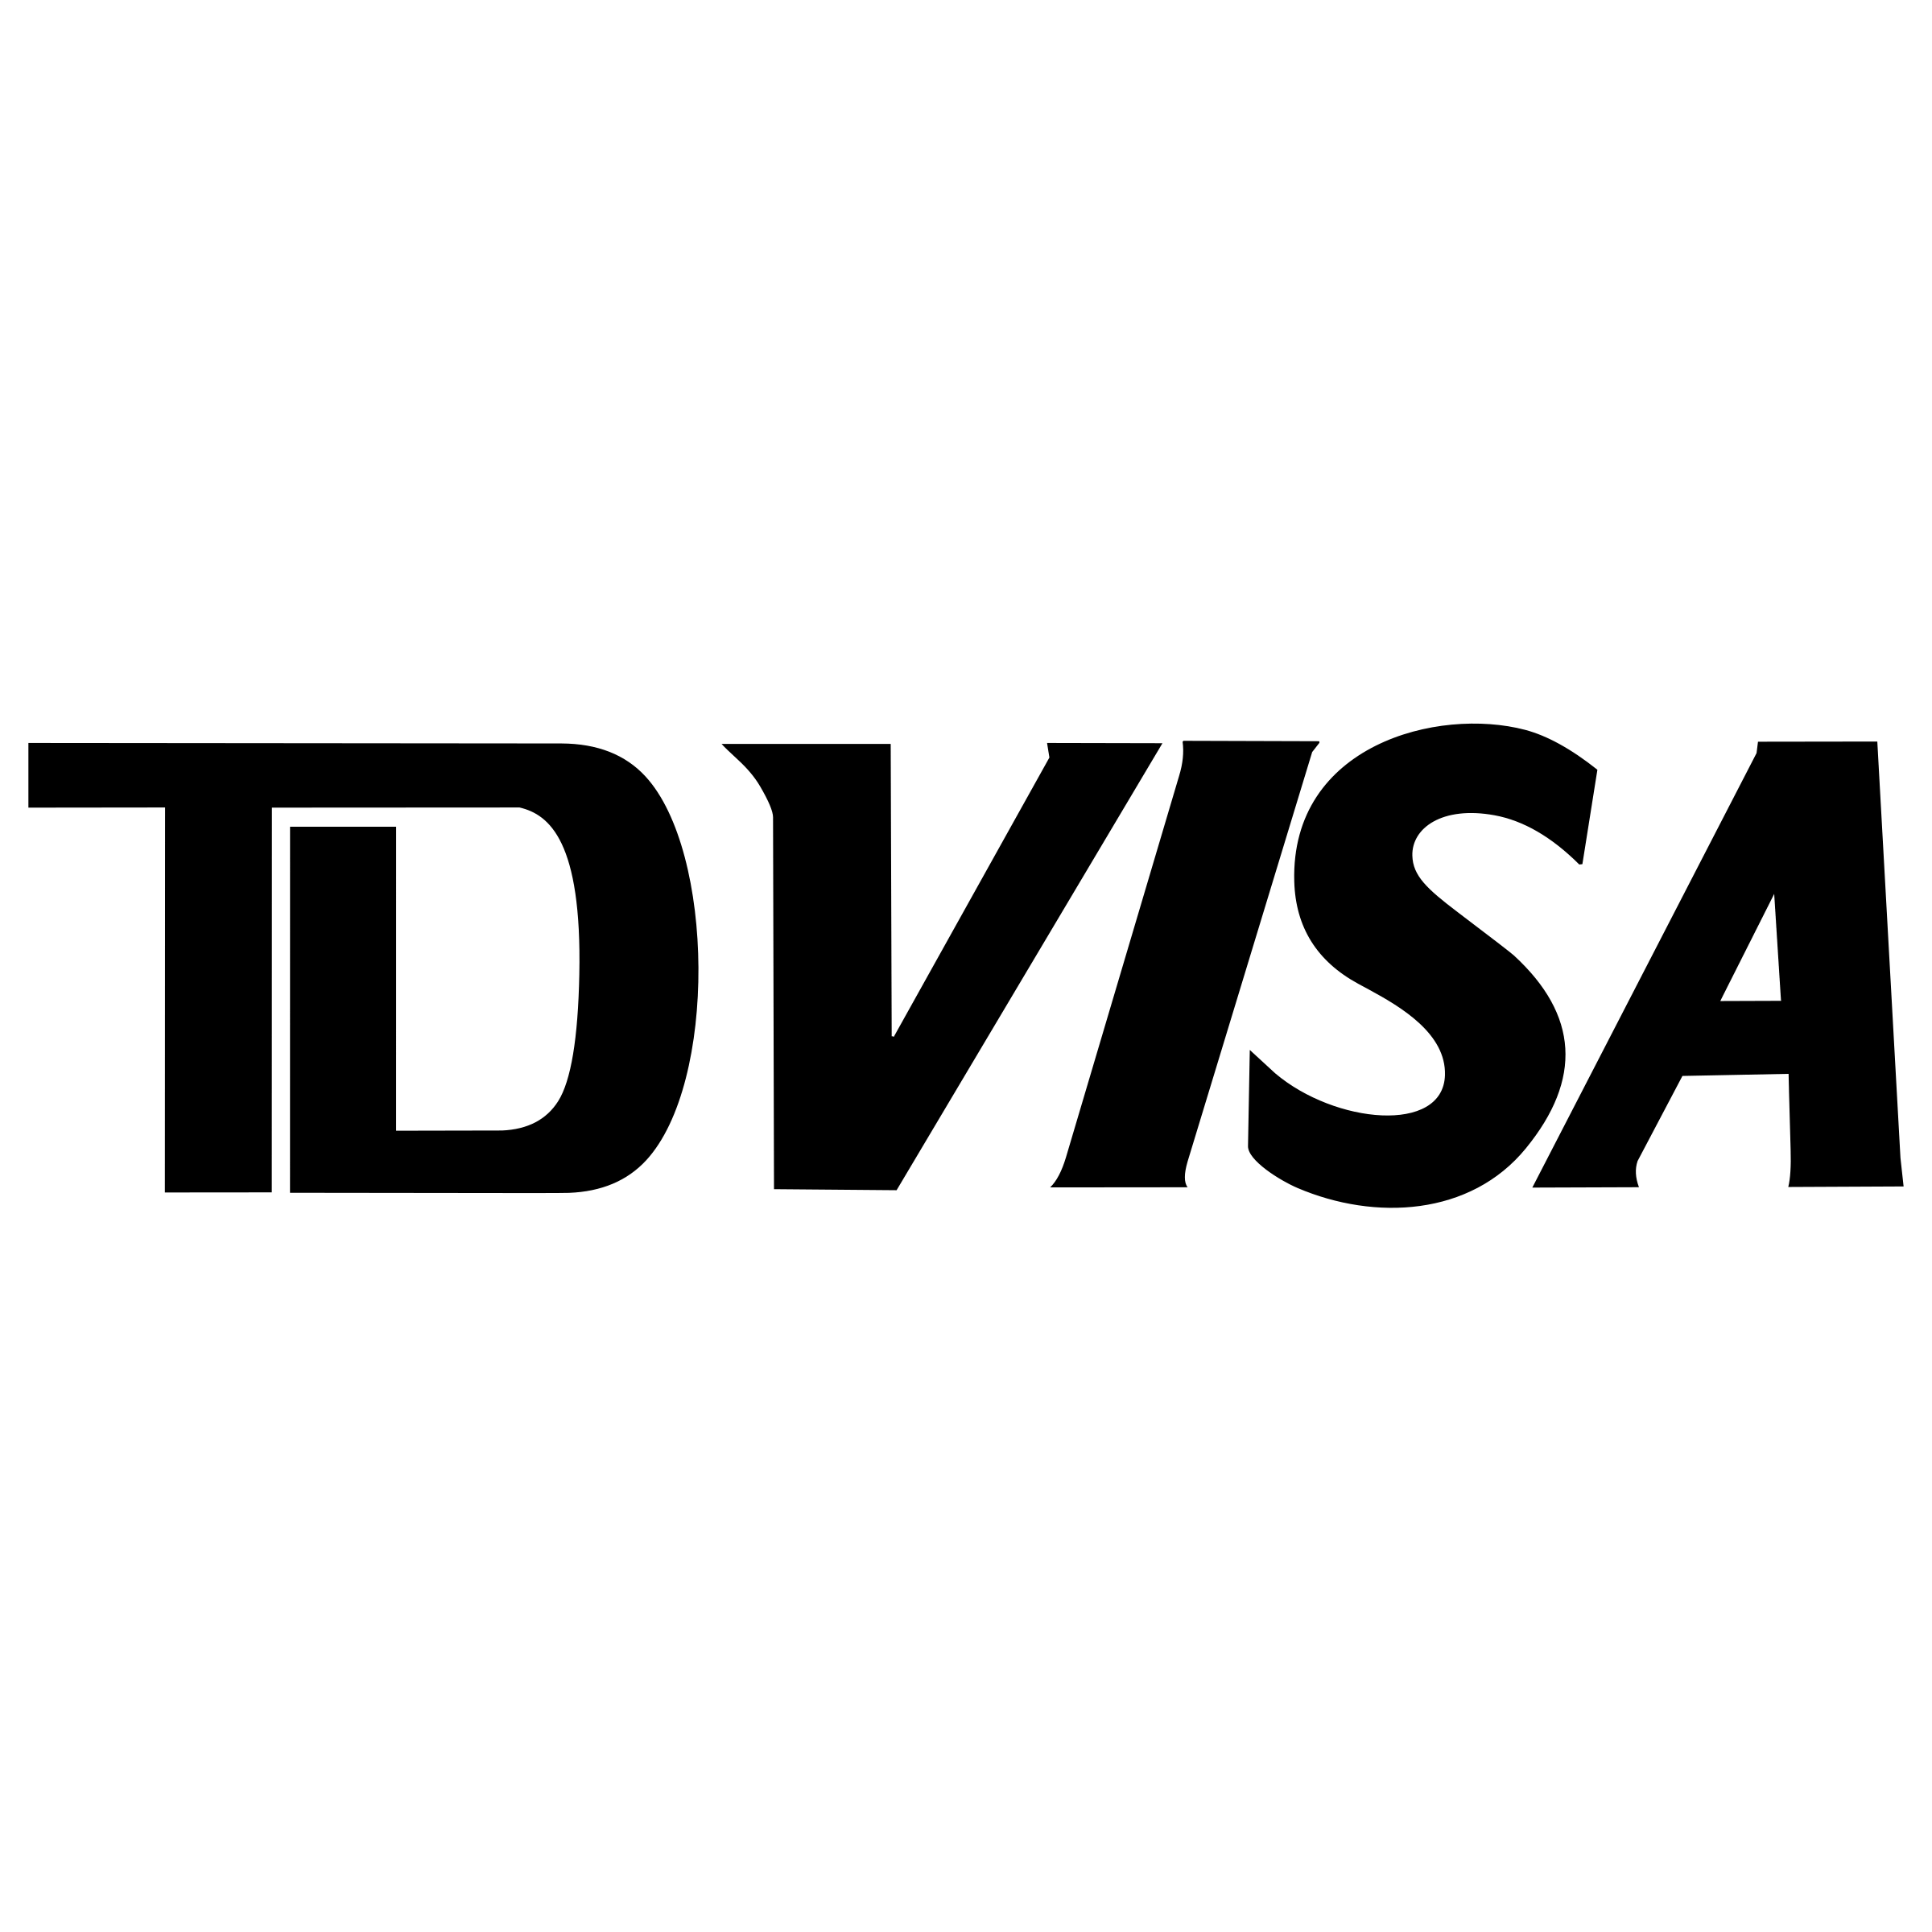 White Visa Logo - TD VISA Logo PNG Transparent & SVG Vector - Freebie Supply